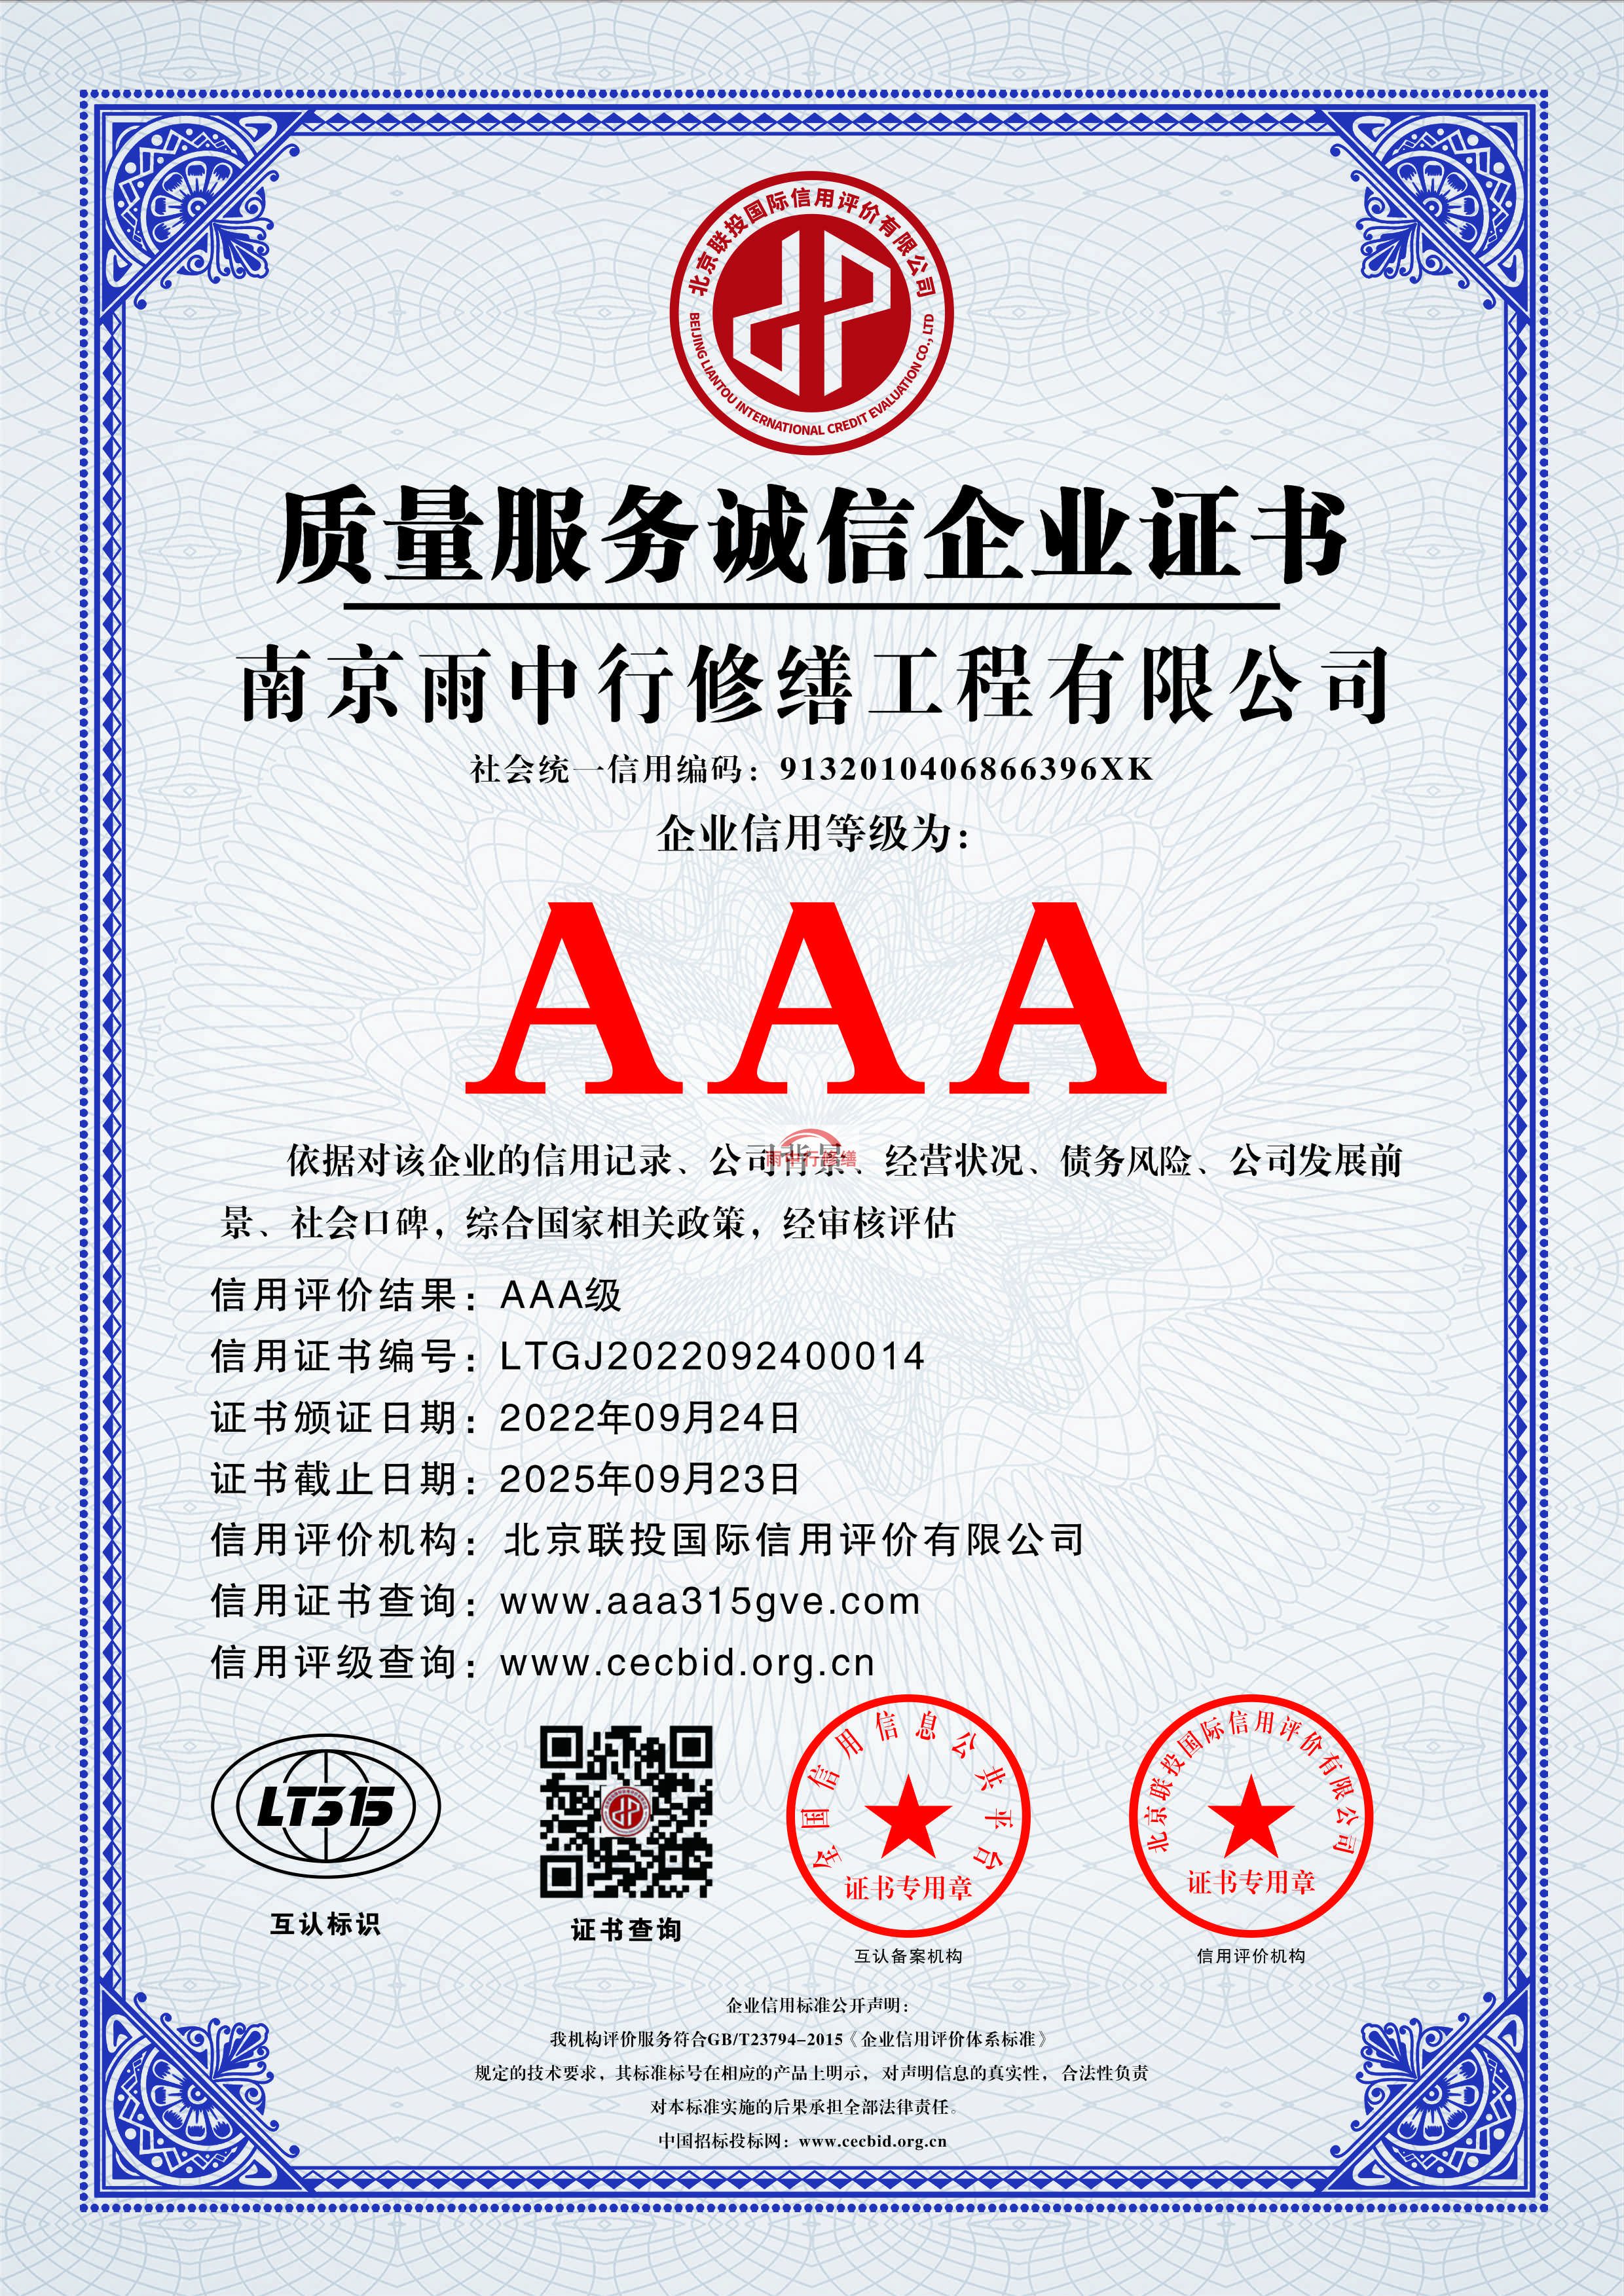 北京雨中行修缮授予AAA级企业